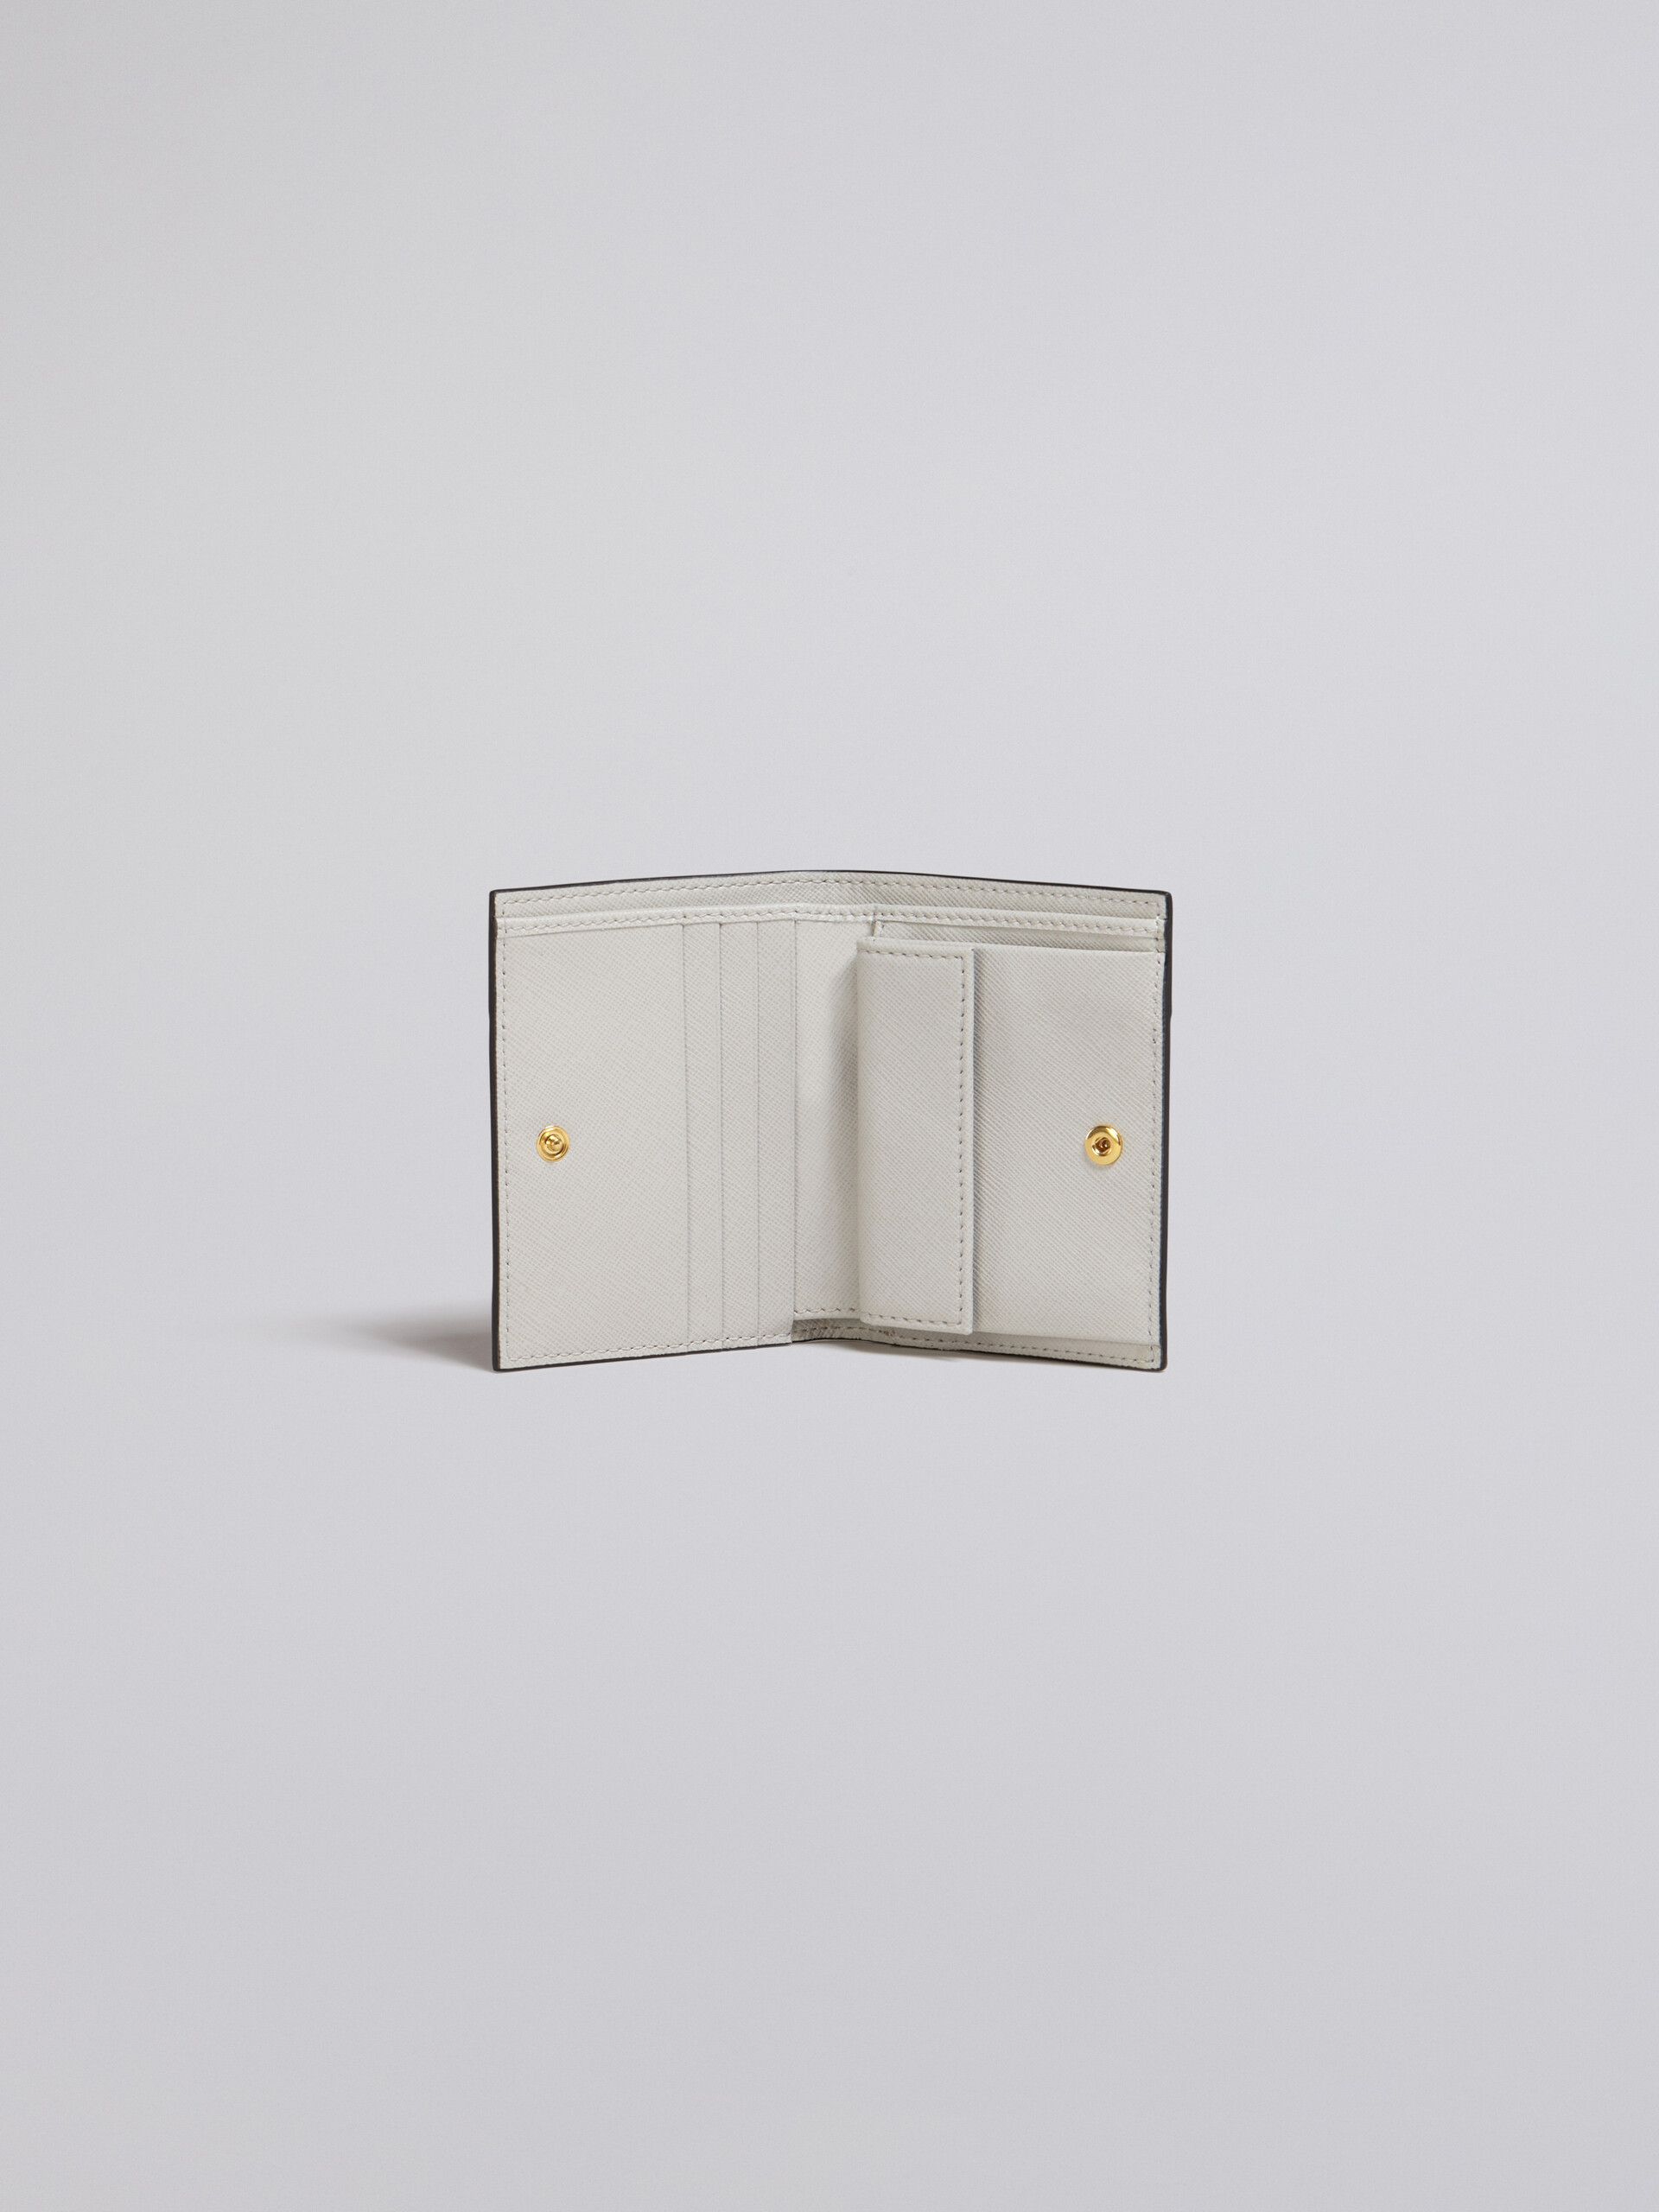 Dreifarbige zweiteilige Geldbörse aus Saffianleder in Weiß, Braun und Rot - Brieftaschen - Image 2